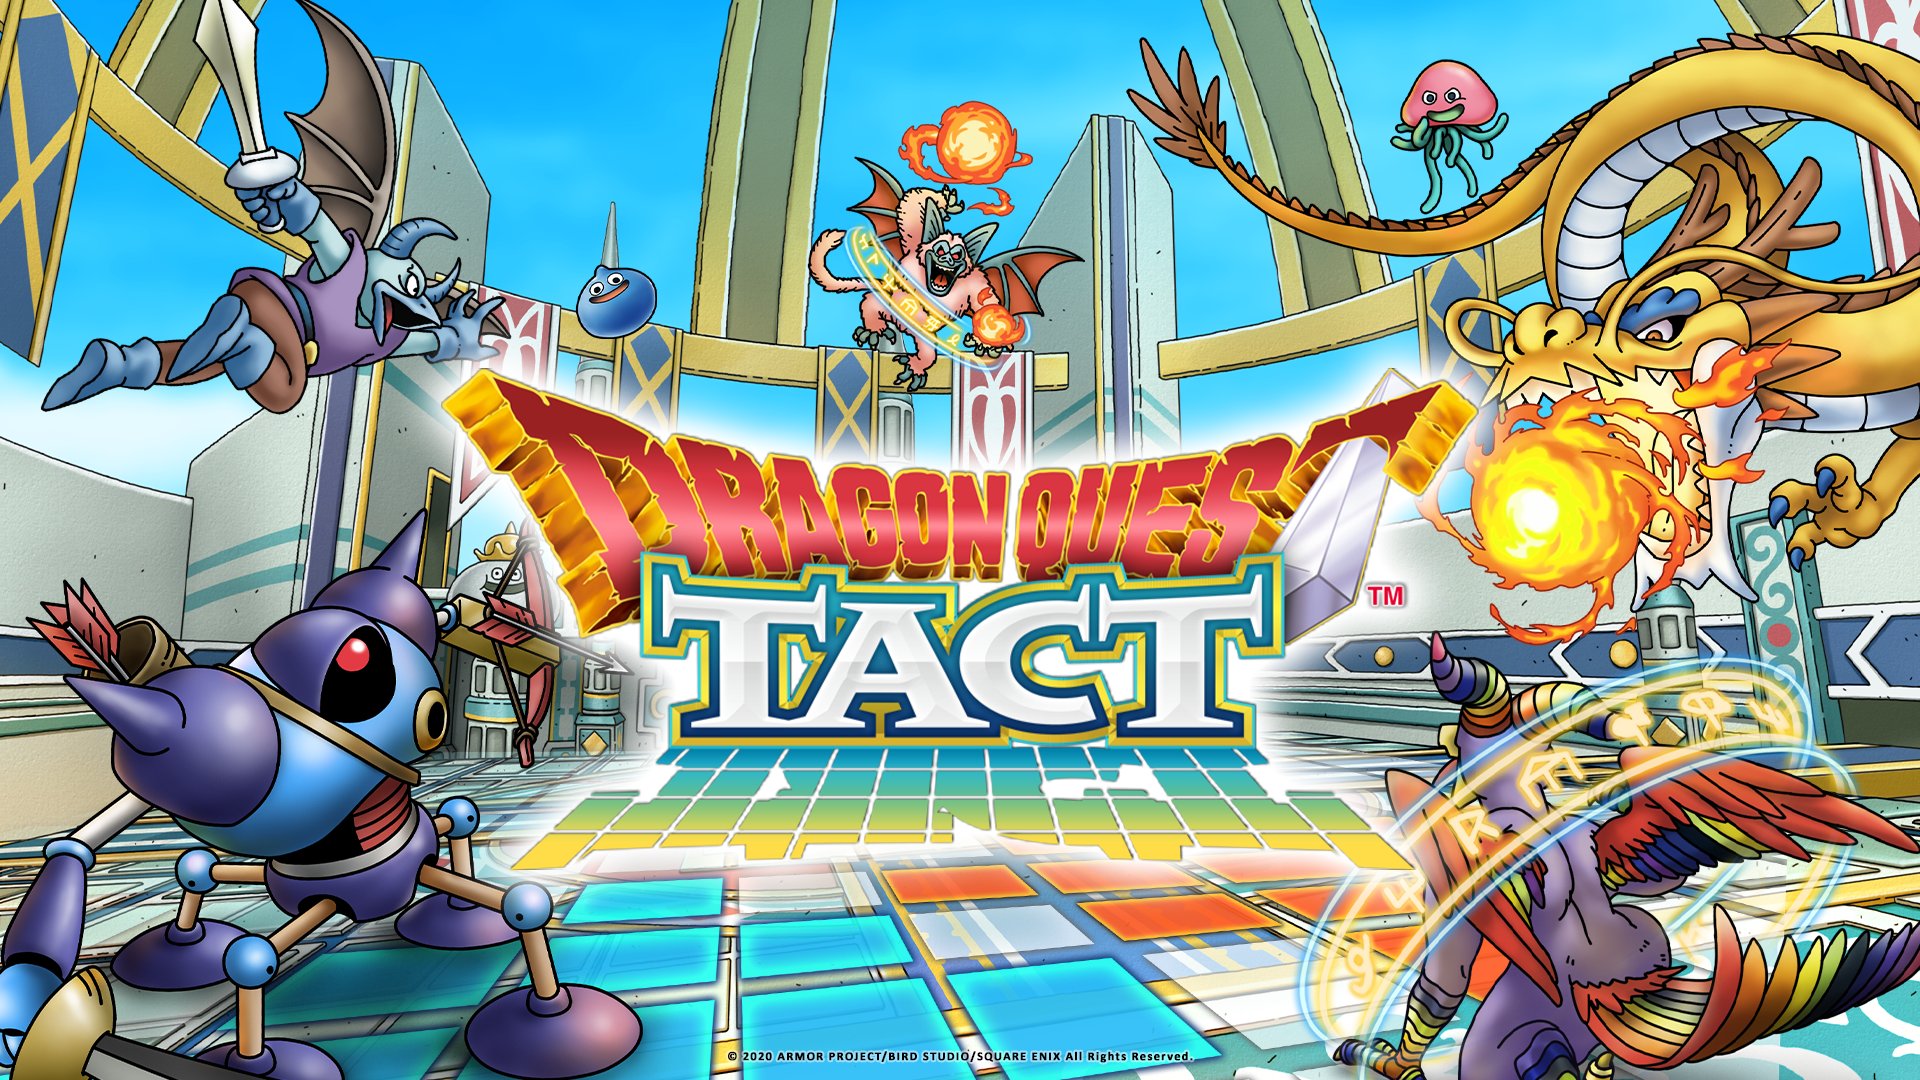 Tact Quest Dragon 09 29 20 1